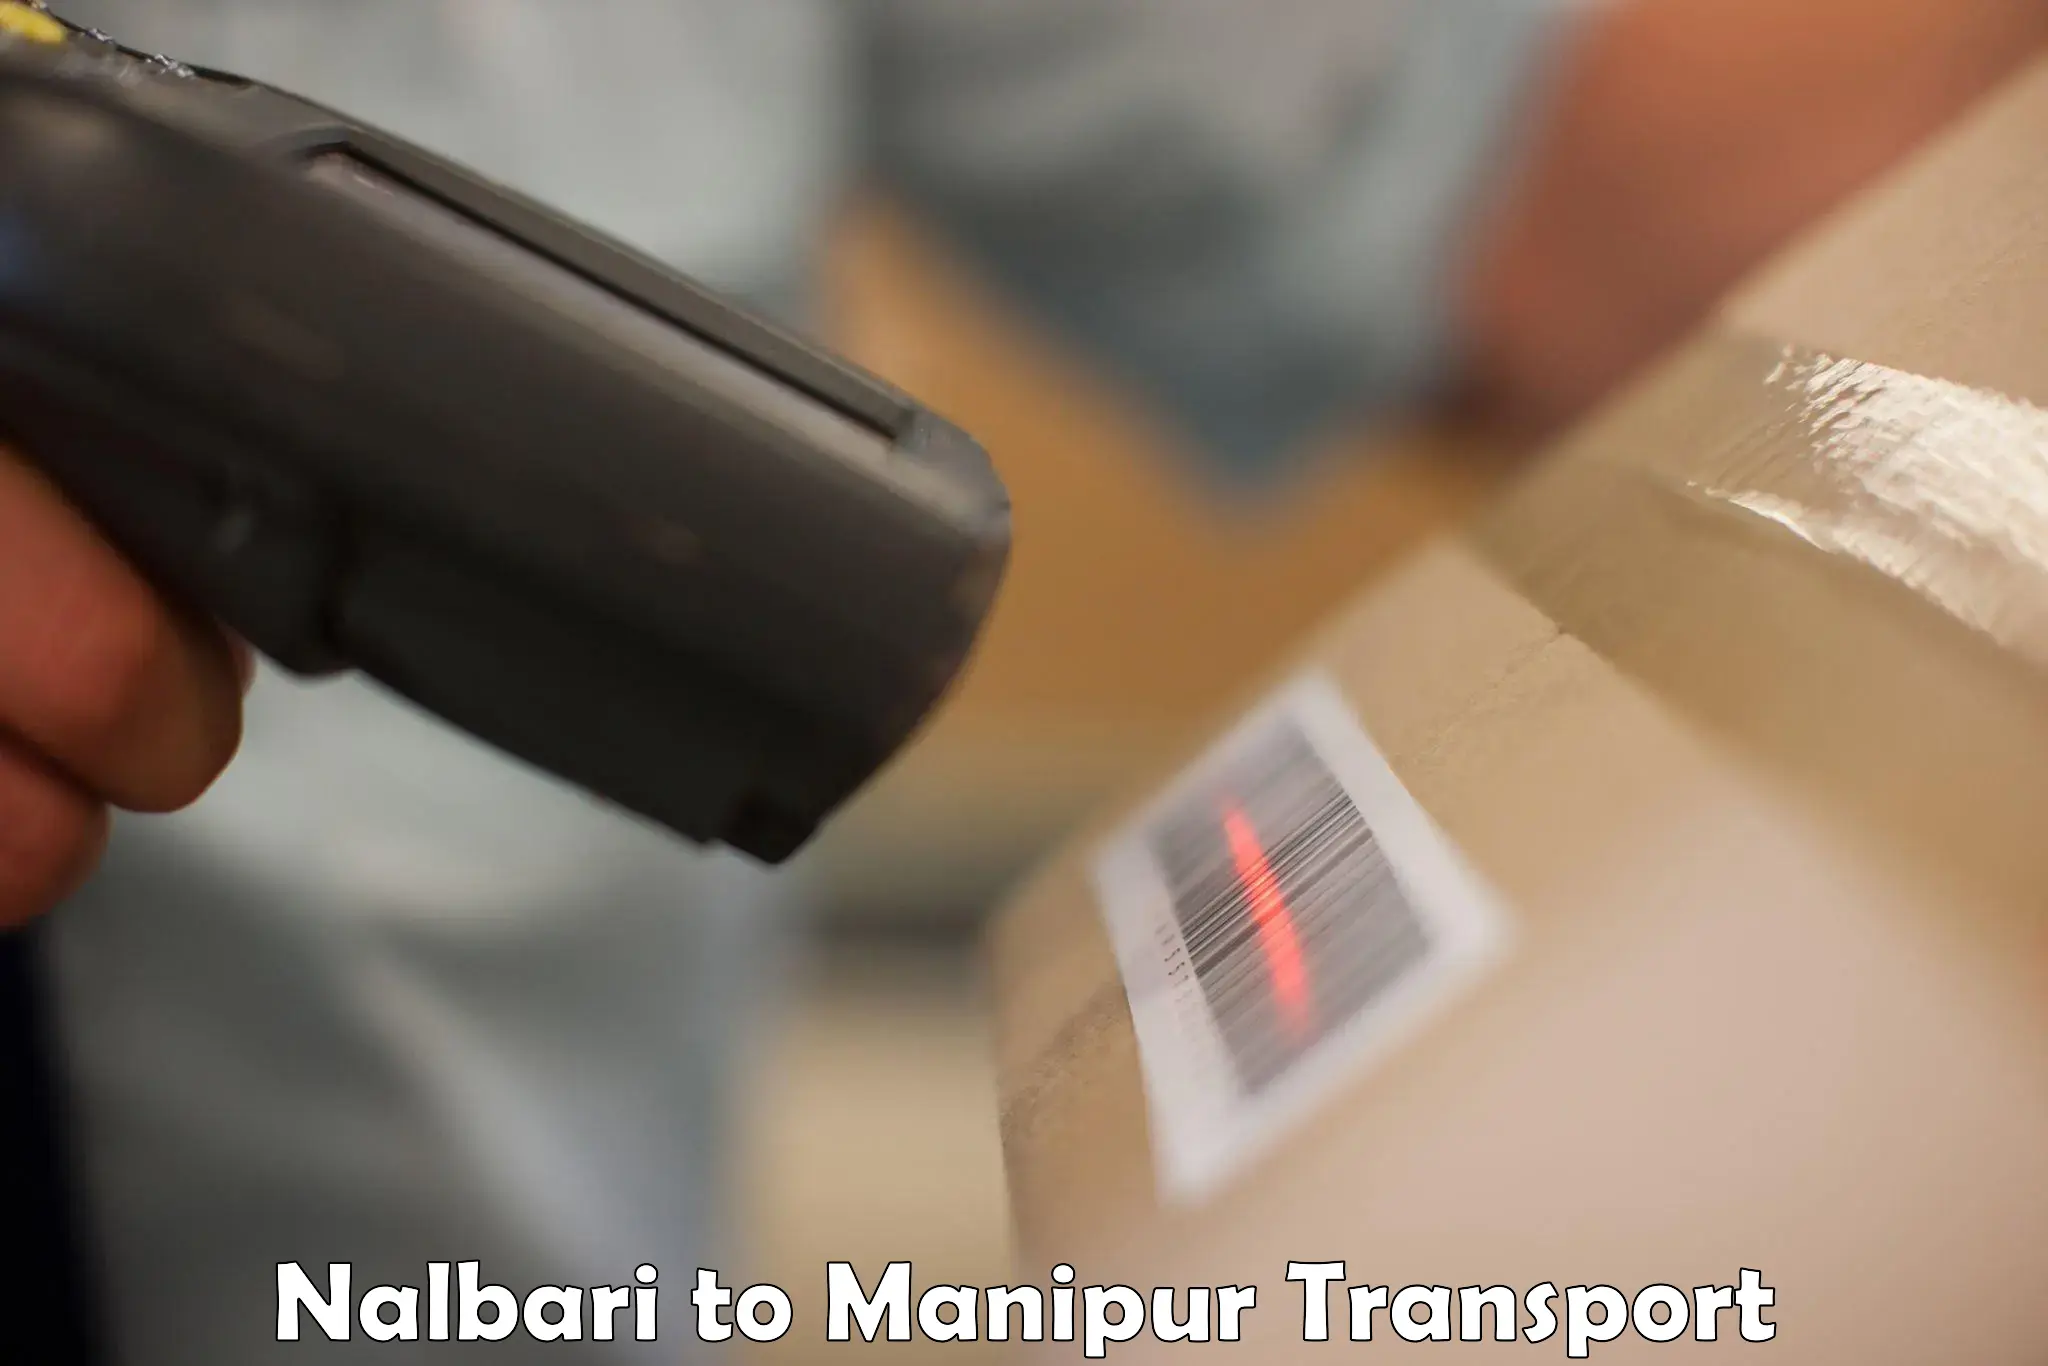 Truck transport companies in India Nalbari to Kakching